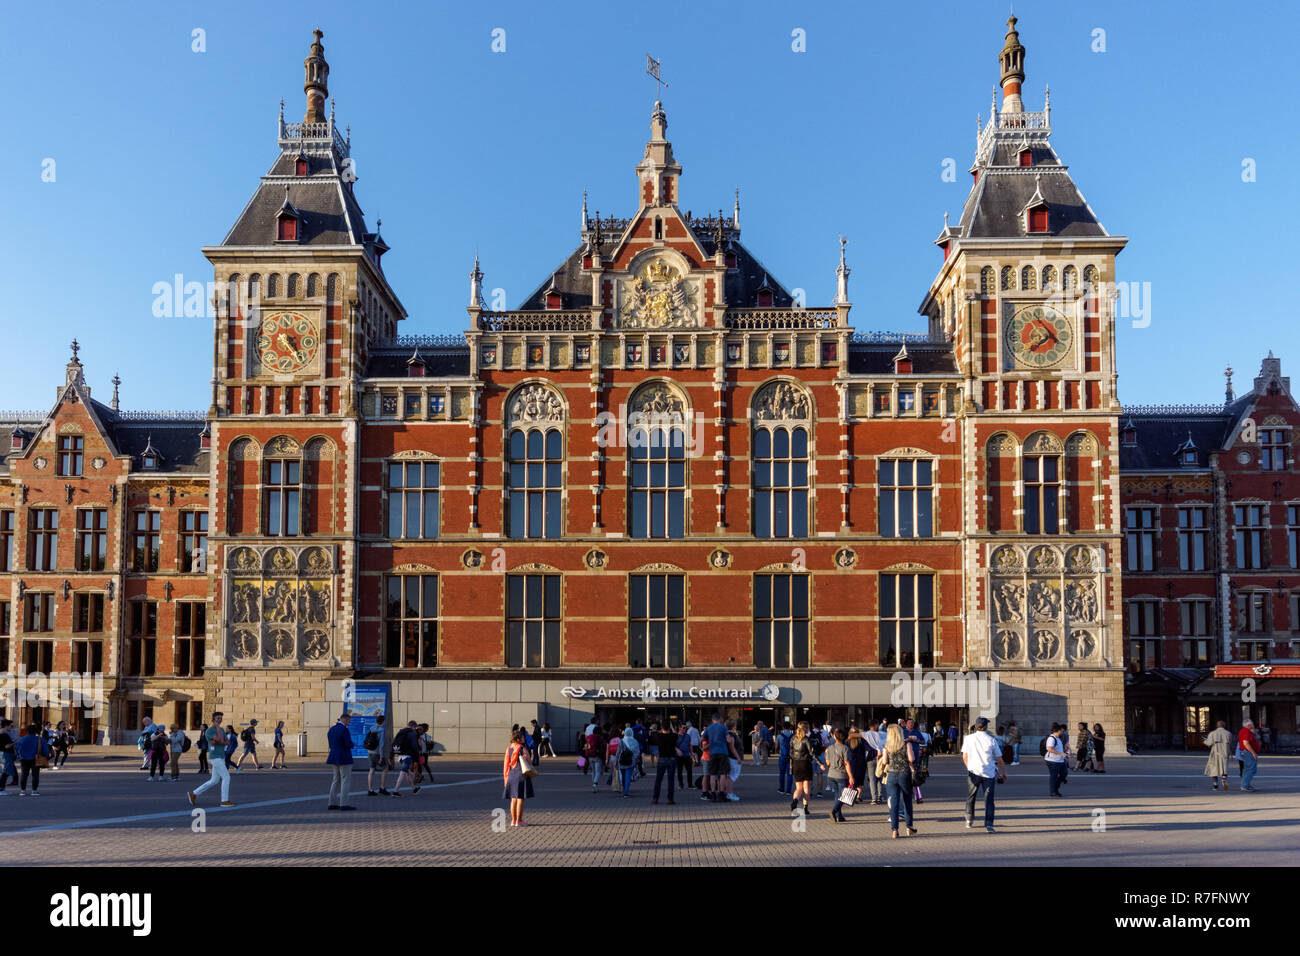 D'Amsterdam, la gare centrale d'Amsterdam, Amsterdam, Pays-Bas Banque D'Images